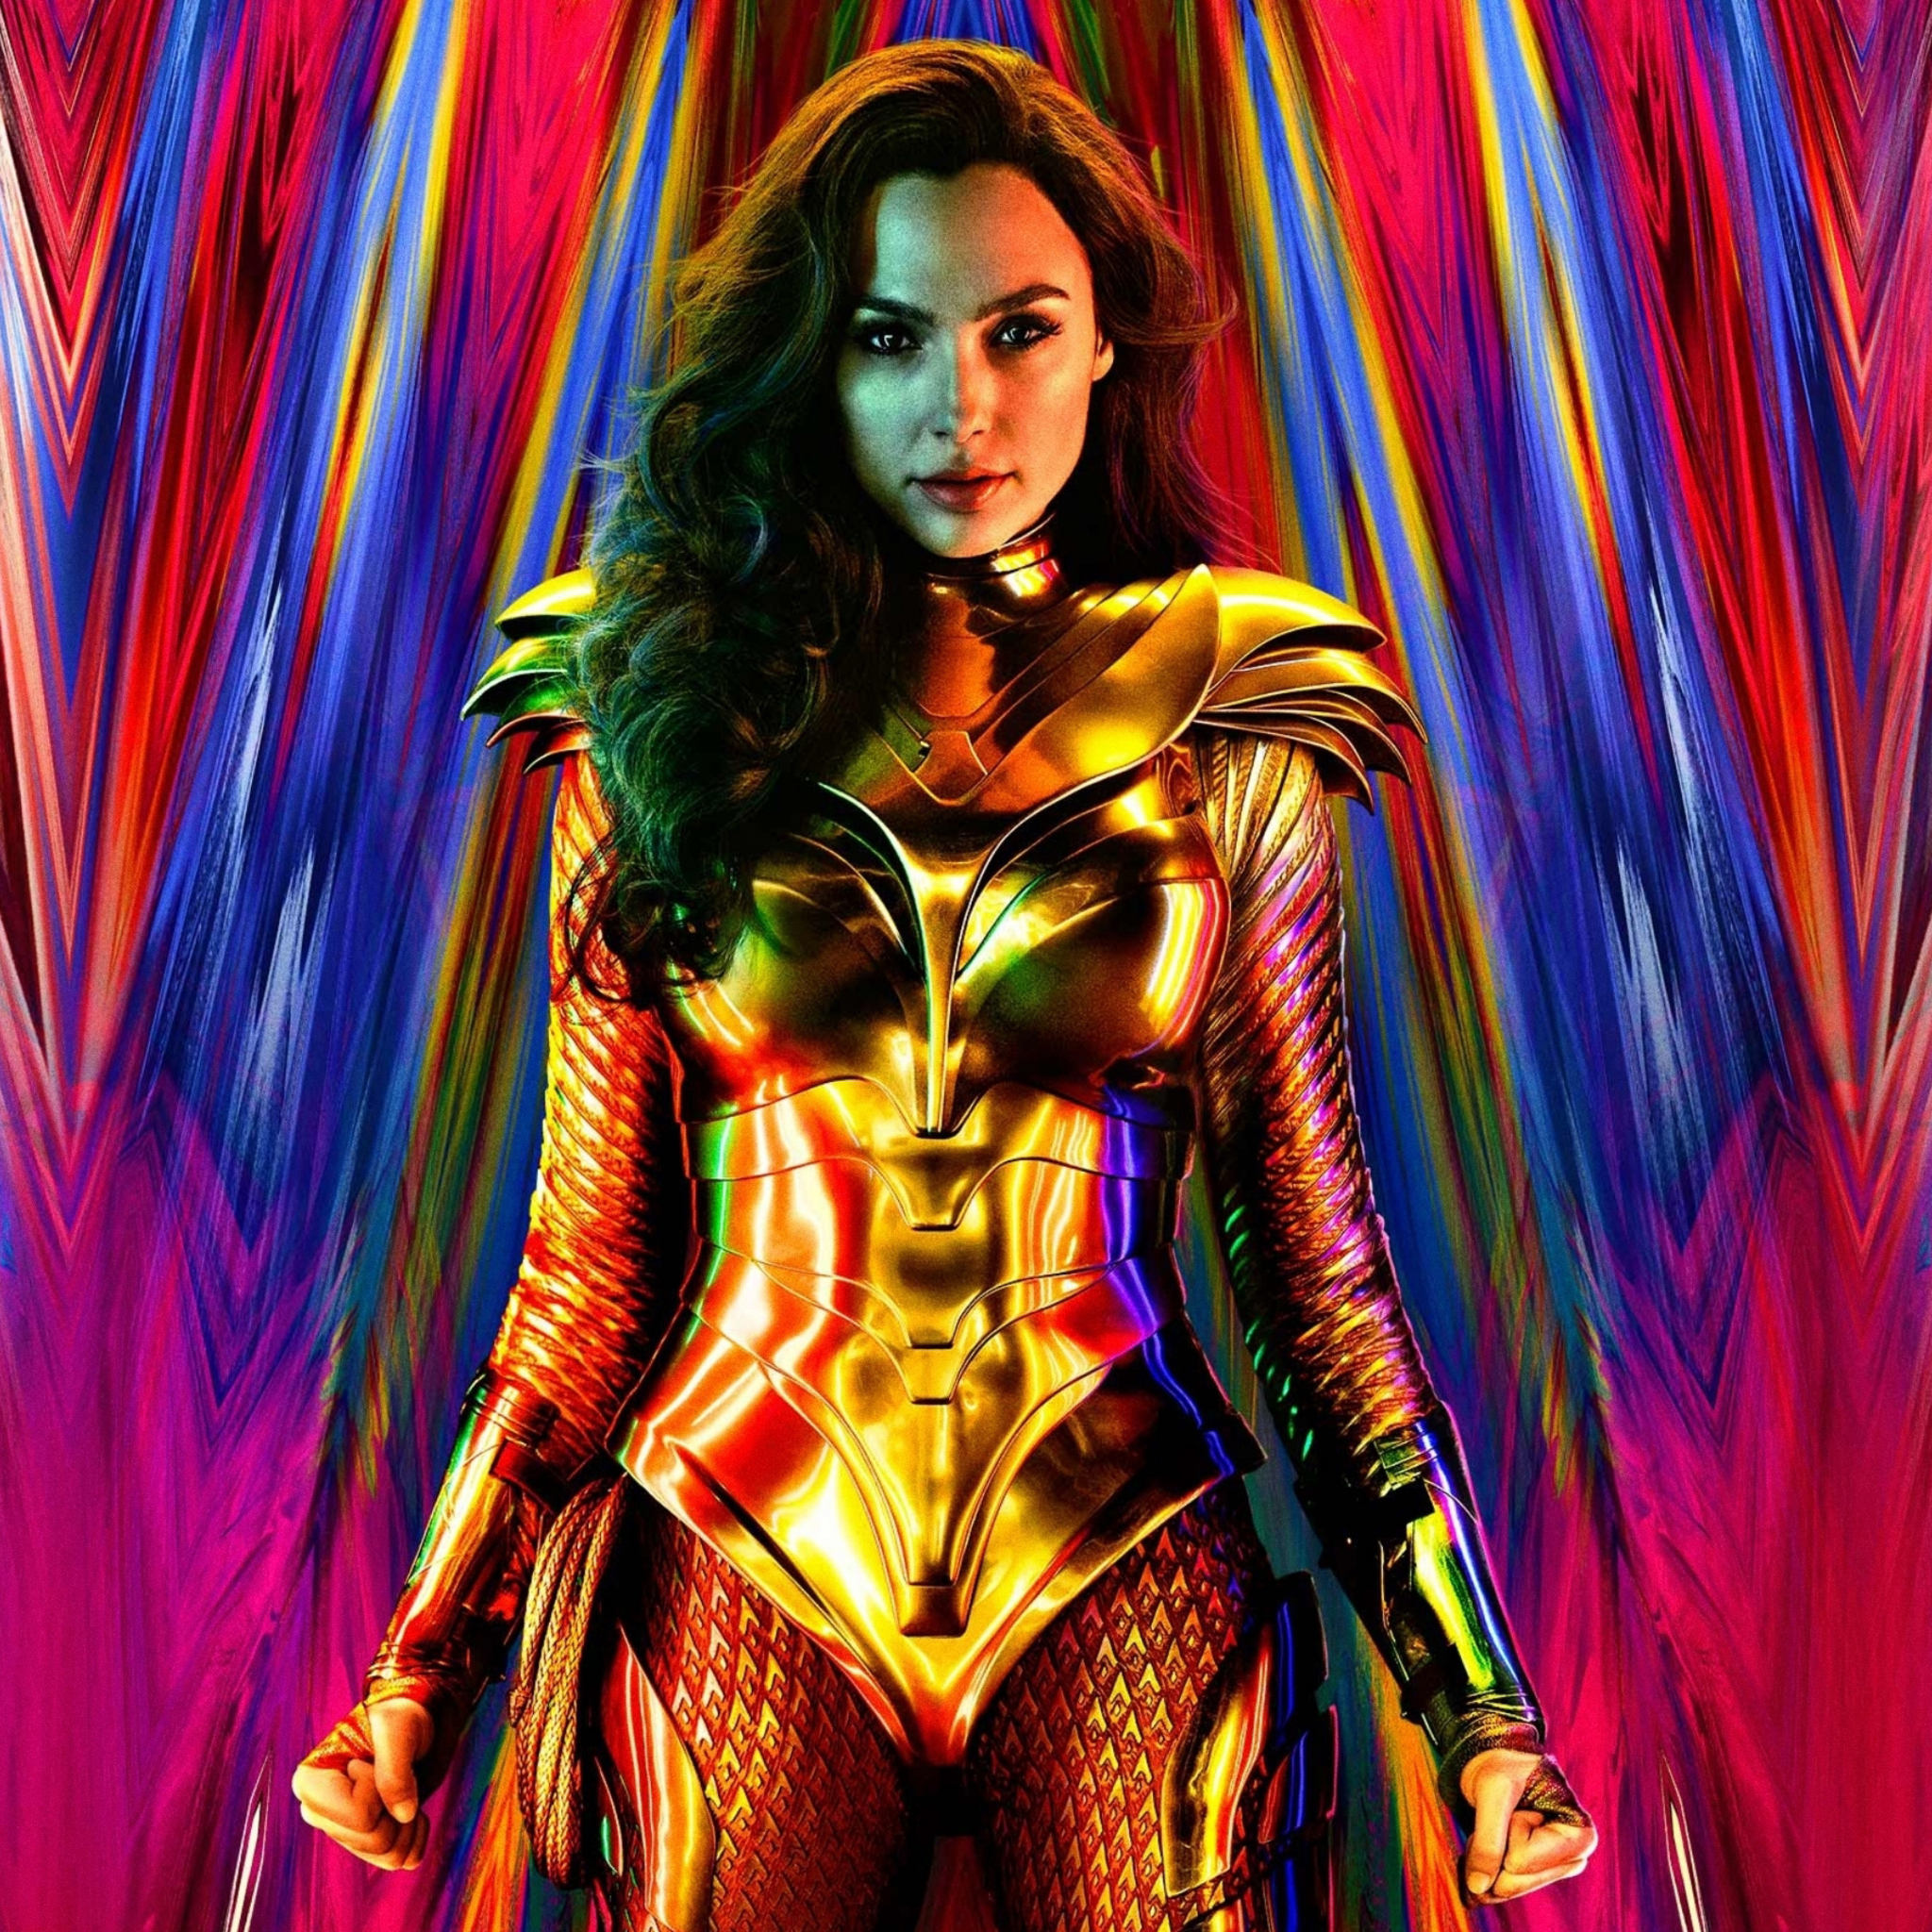 Hình nền Wonder Woman cho iPad là một sự kết hợp hoàn hảo giữa sức mạnh và vẻ đẹp. Nếu bạn là một người hâm mộ của nhân vật siêu anh hùng này, hãy bấm vào hình ảnh để thưởng thức hình nền đầy màu sắc và lôi cuốn này.